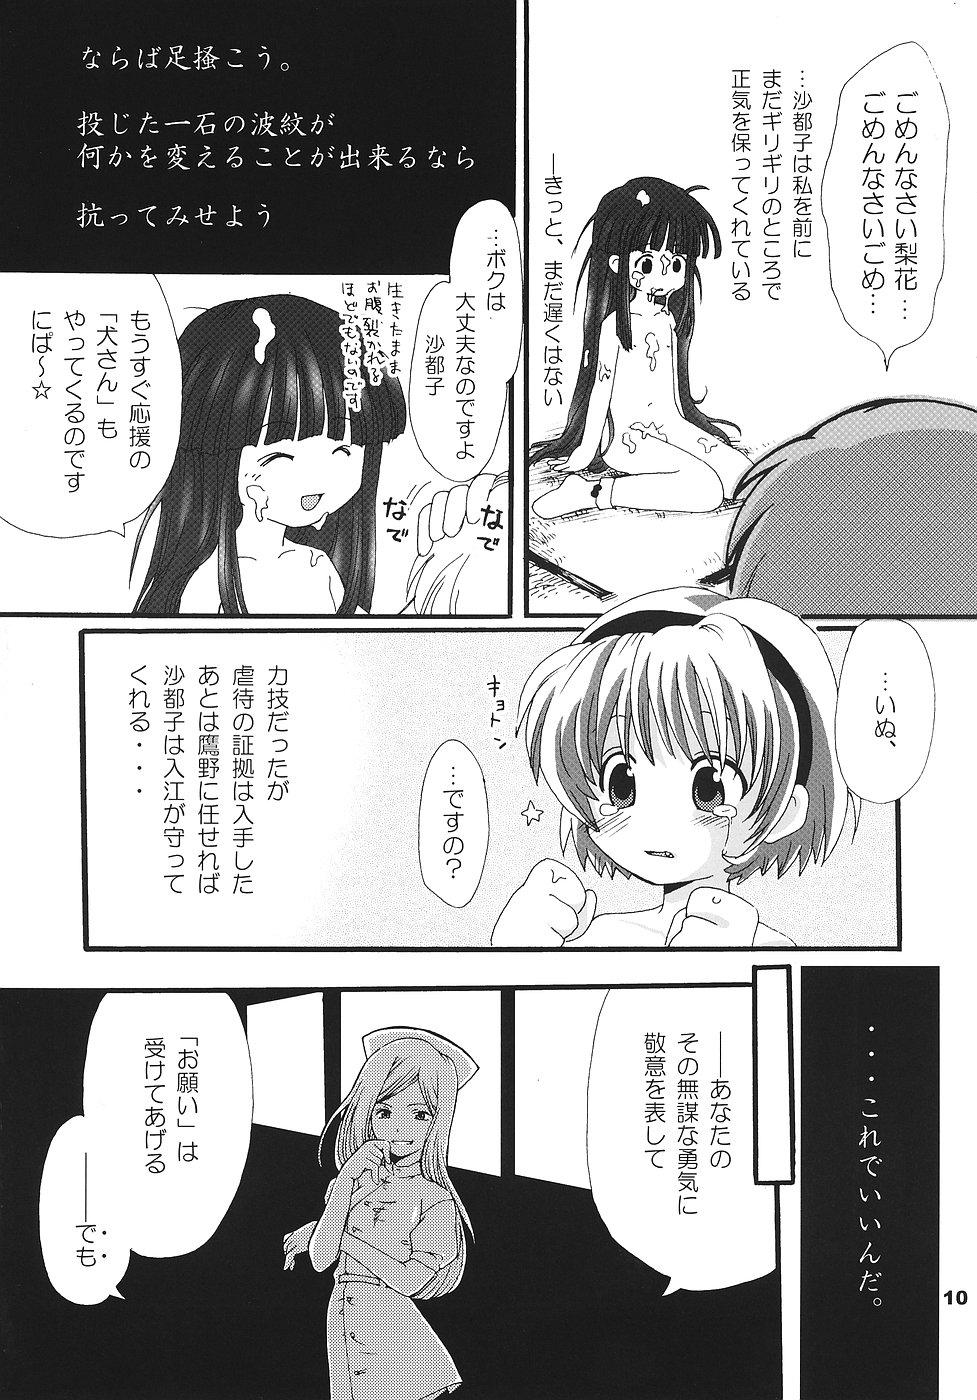 Butthole Higurashi no Koe, Ima wa Tae - Higurashi no naku koro ni Edging - Page 9